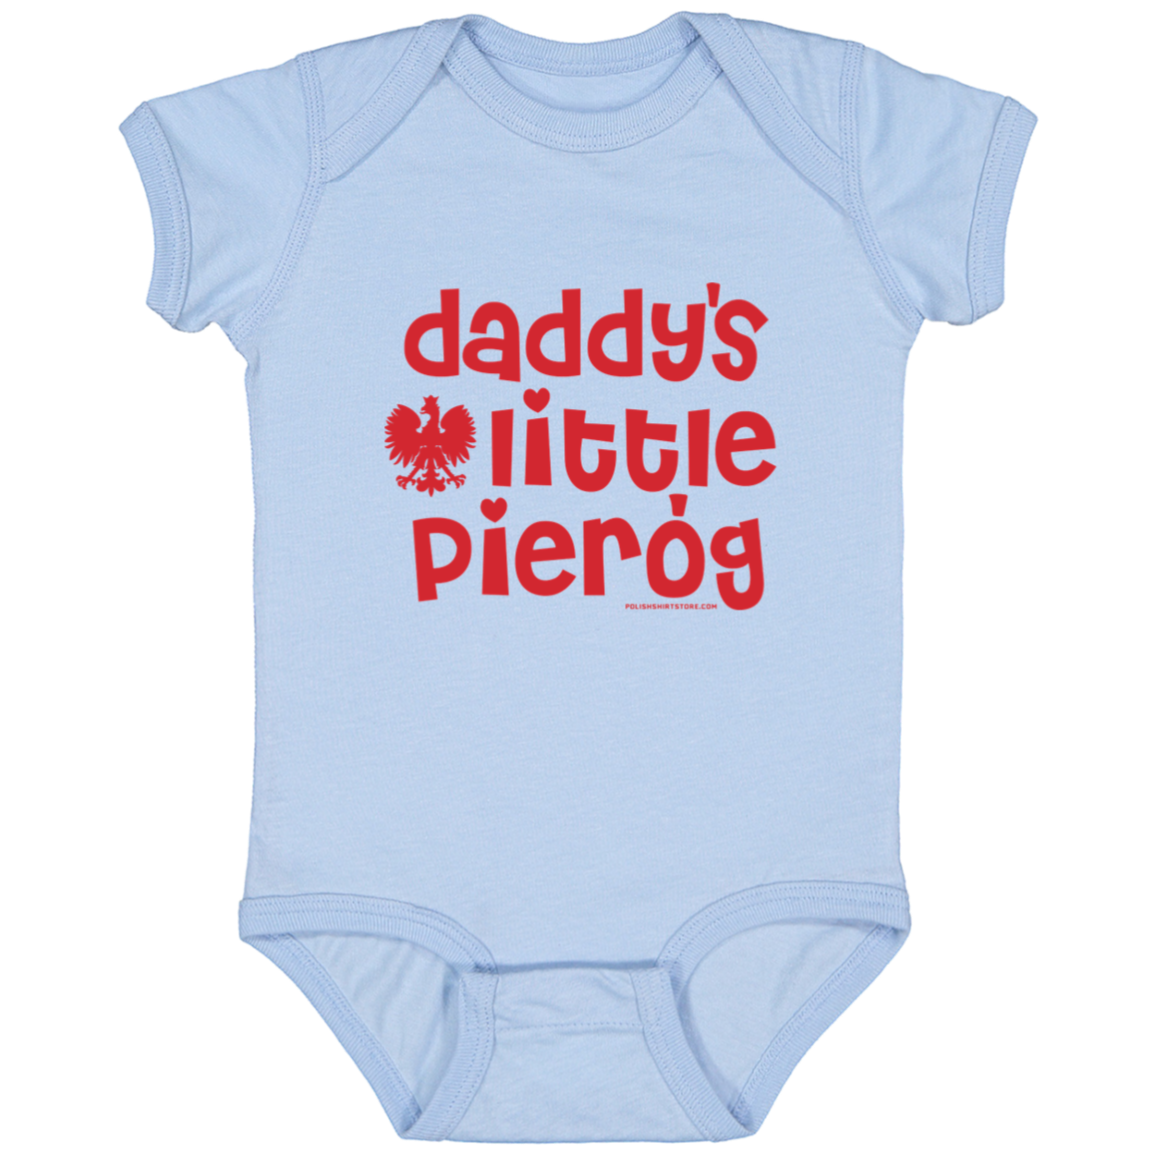 Daddy's Little Pierogi Infant Bodysuit Baby CustomCat Light Blue Newborn 